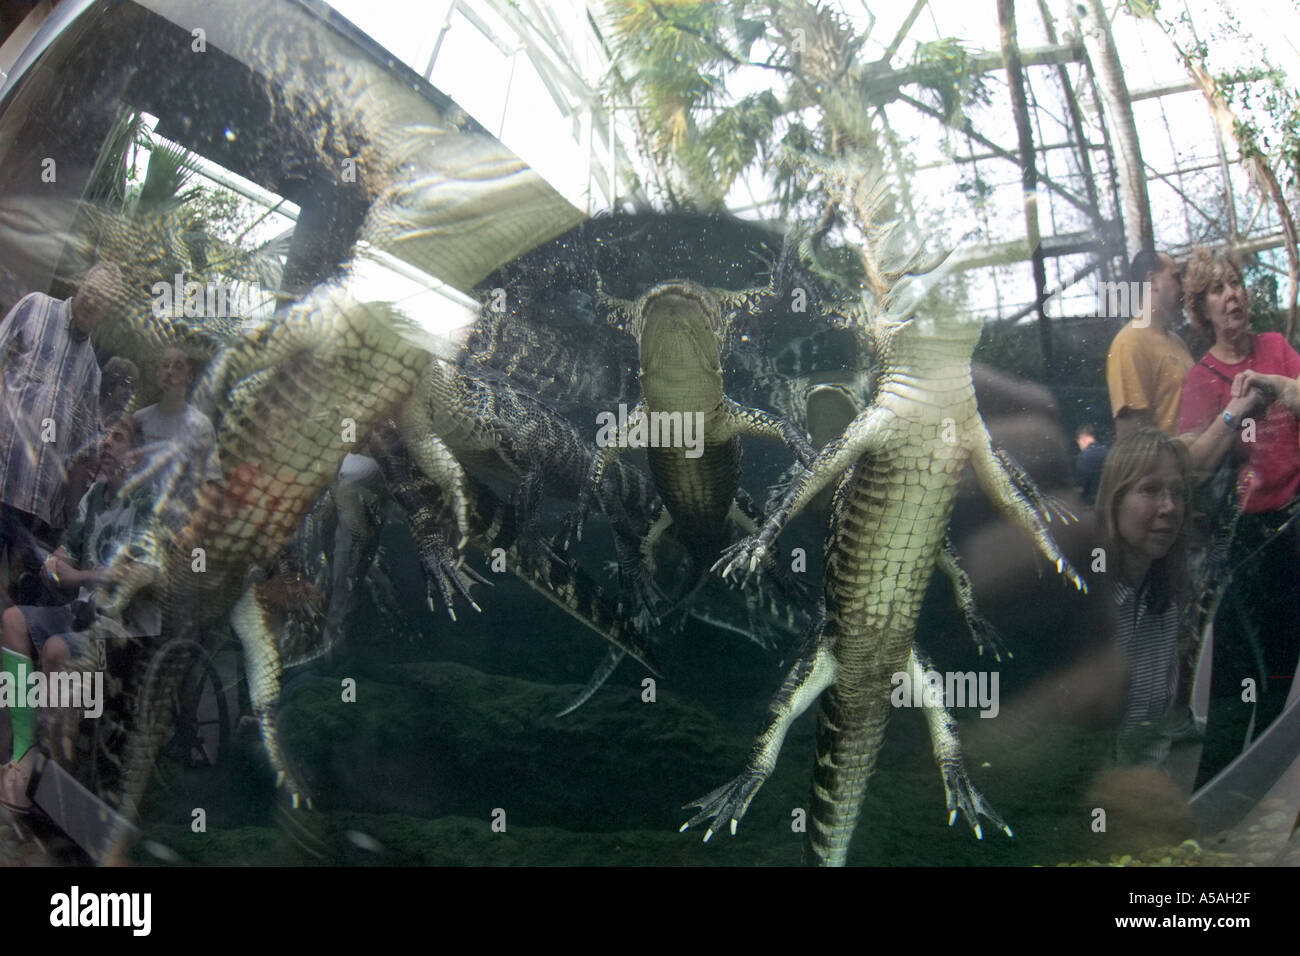 Baby alligators in tank Florida Aquariaum Tampa FL Stock Photo